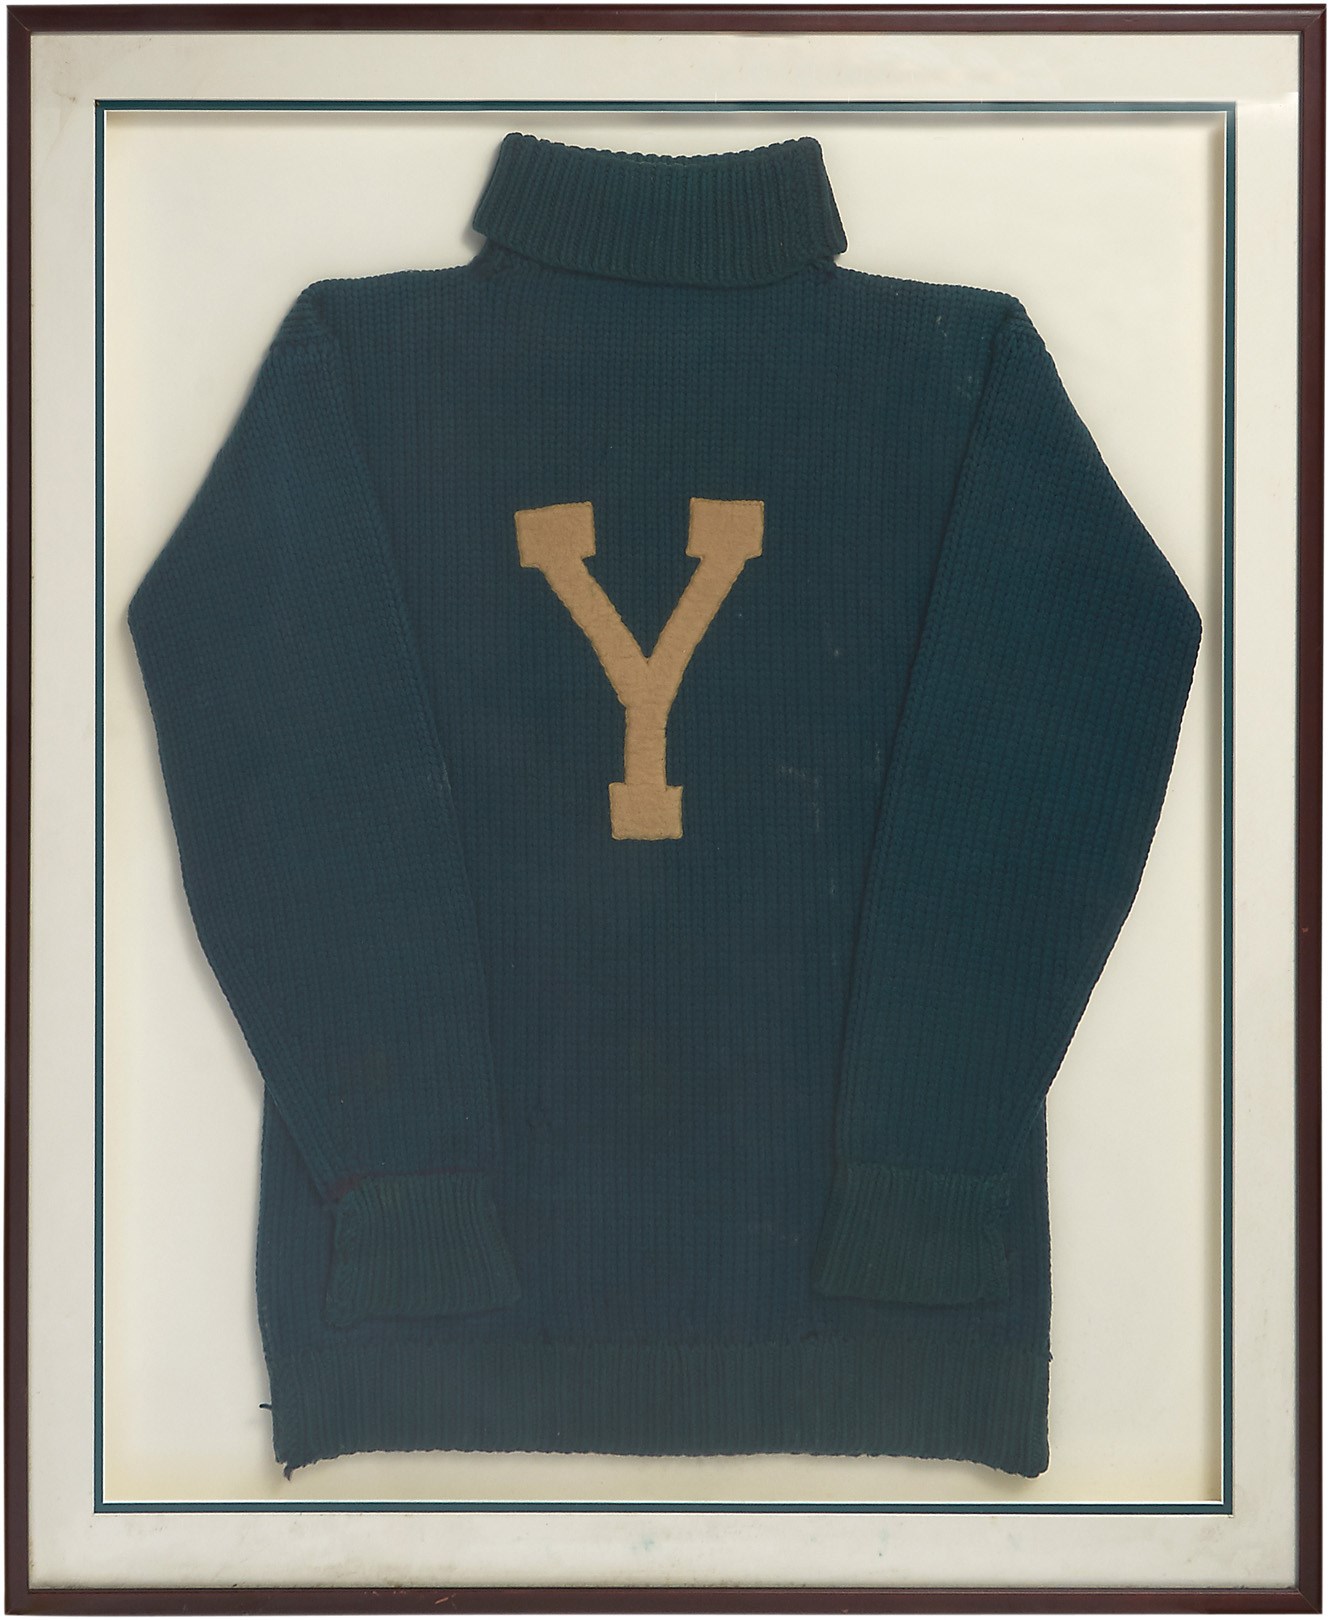 Circa 1900 Yale Football Sweater